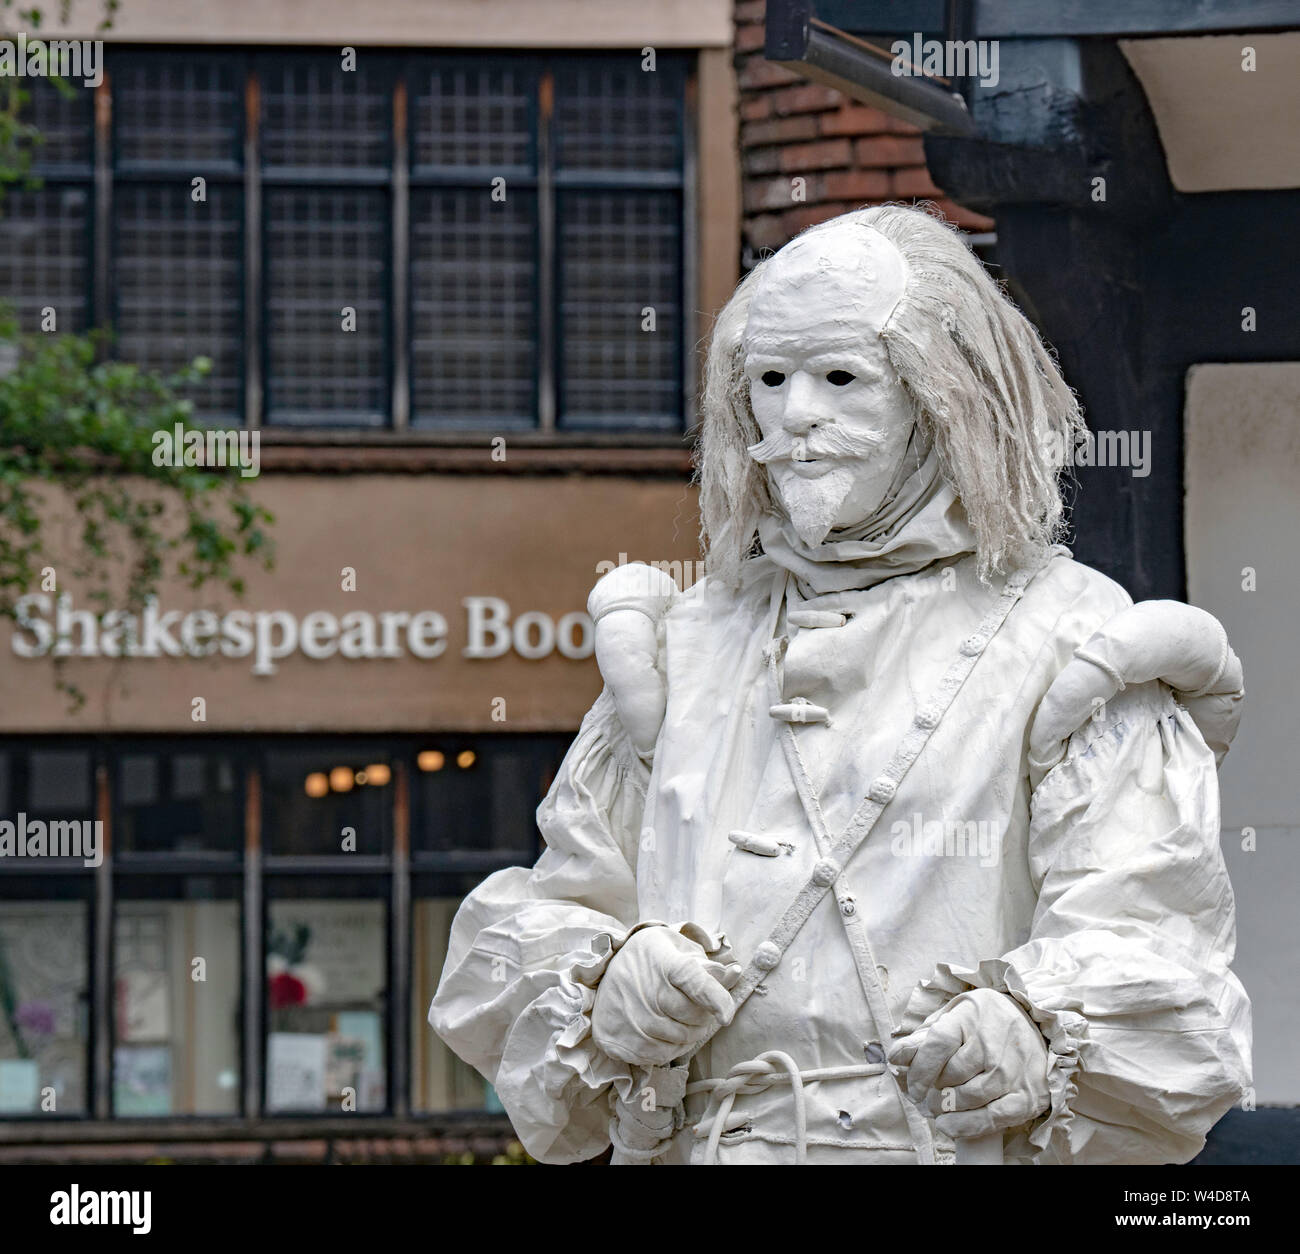 Shakespeares Ghost - un artiste de rue à Stratford-upon-Avon. Banque D'Images